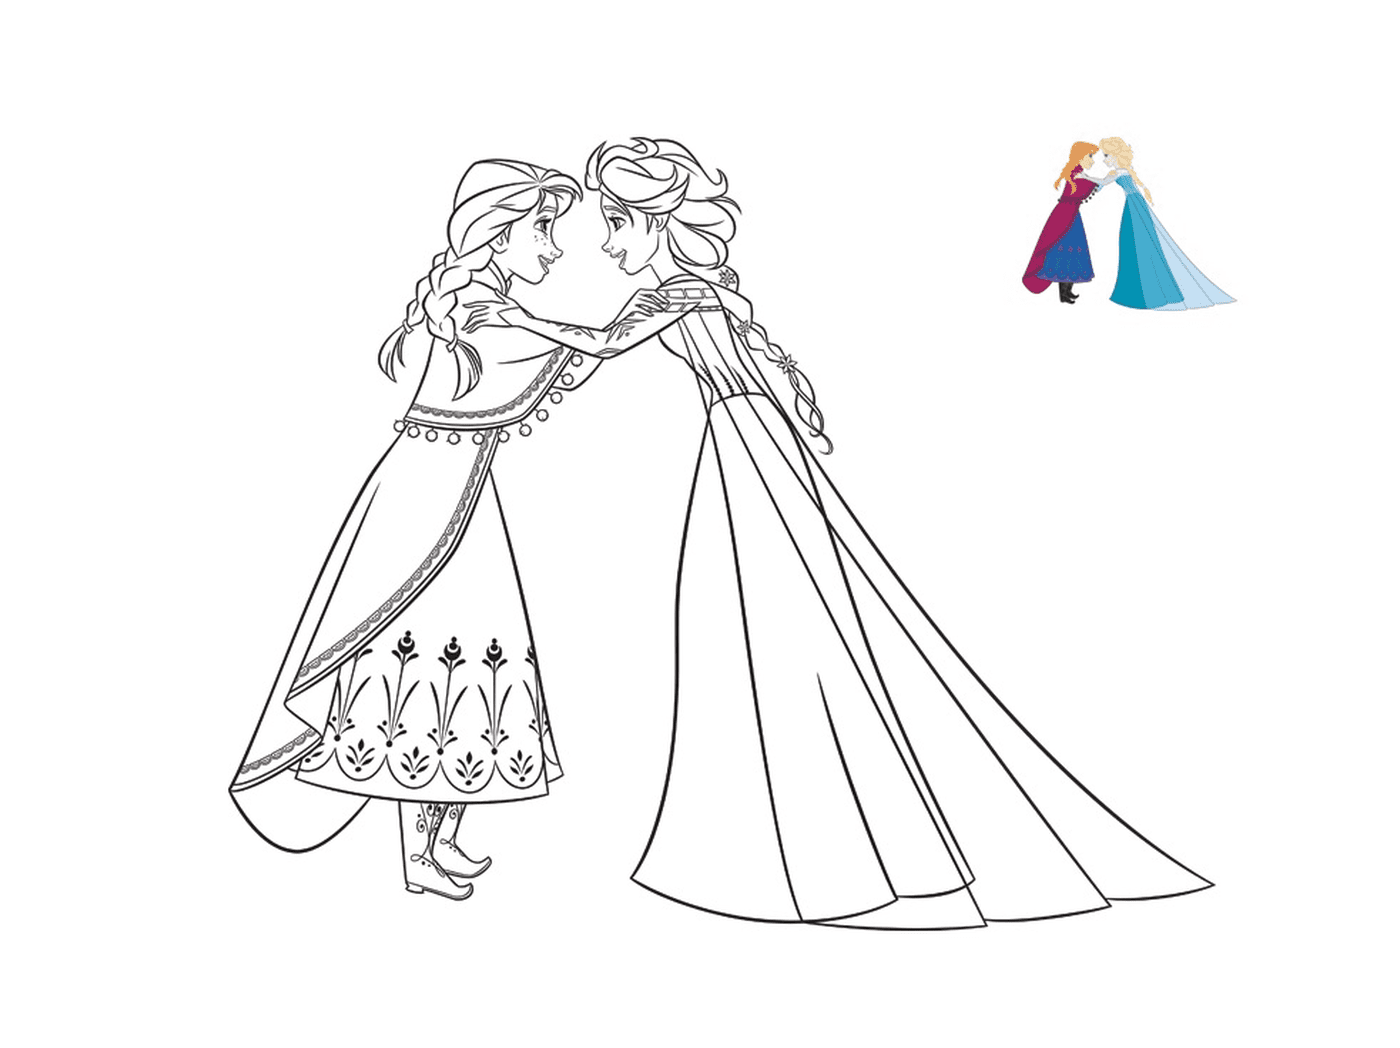   Anna confie un secret à Elsa 